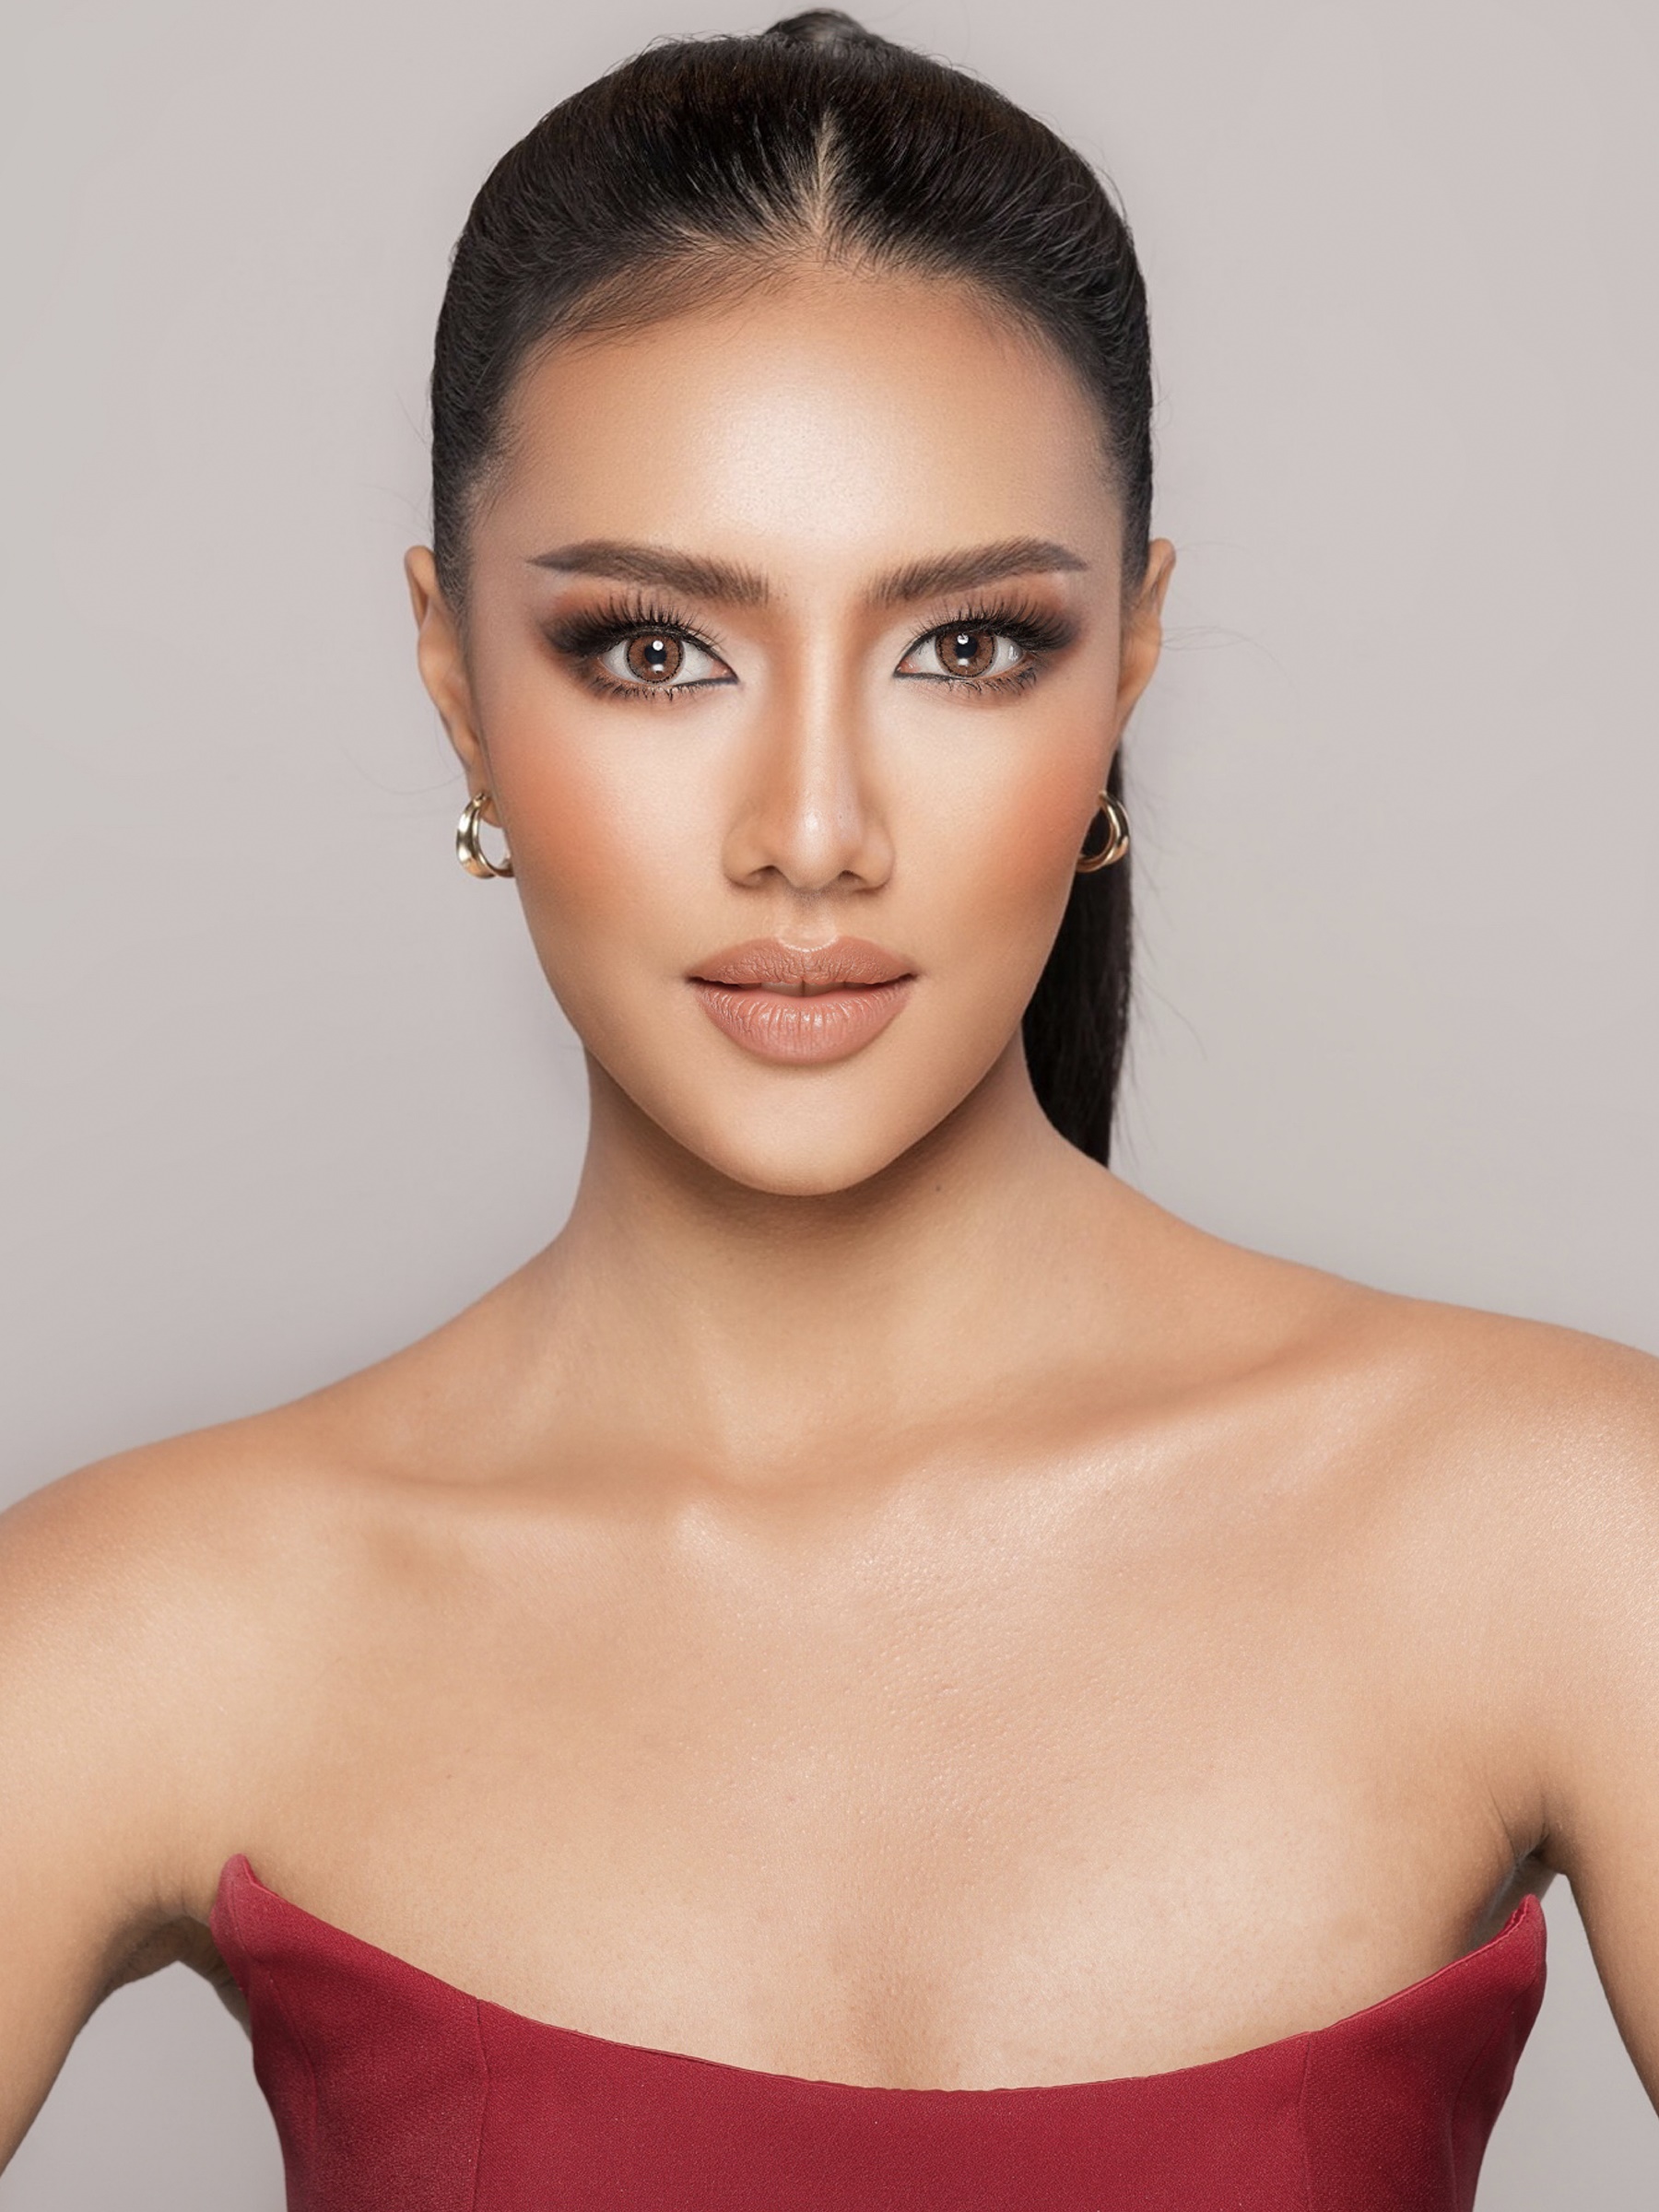 ประกาศรายชื่อสาวงาม 30 คน เข้ารอบการประกวด Miss Universe Thailand 2021